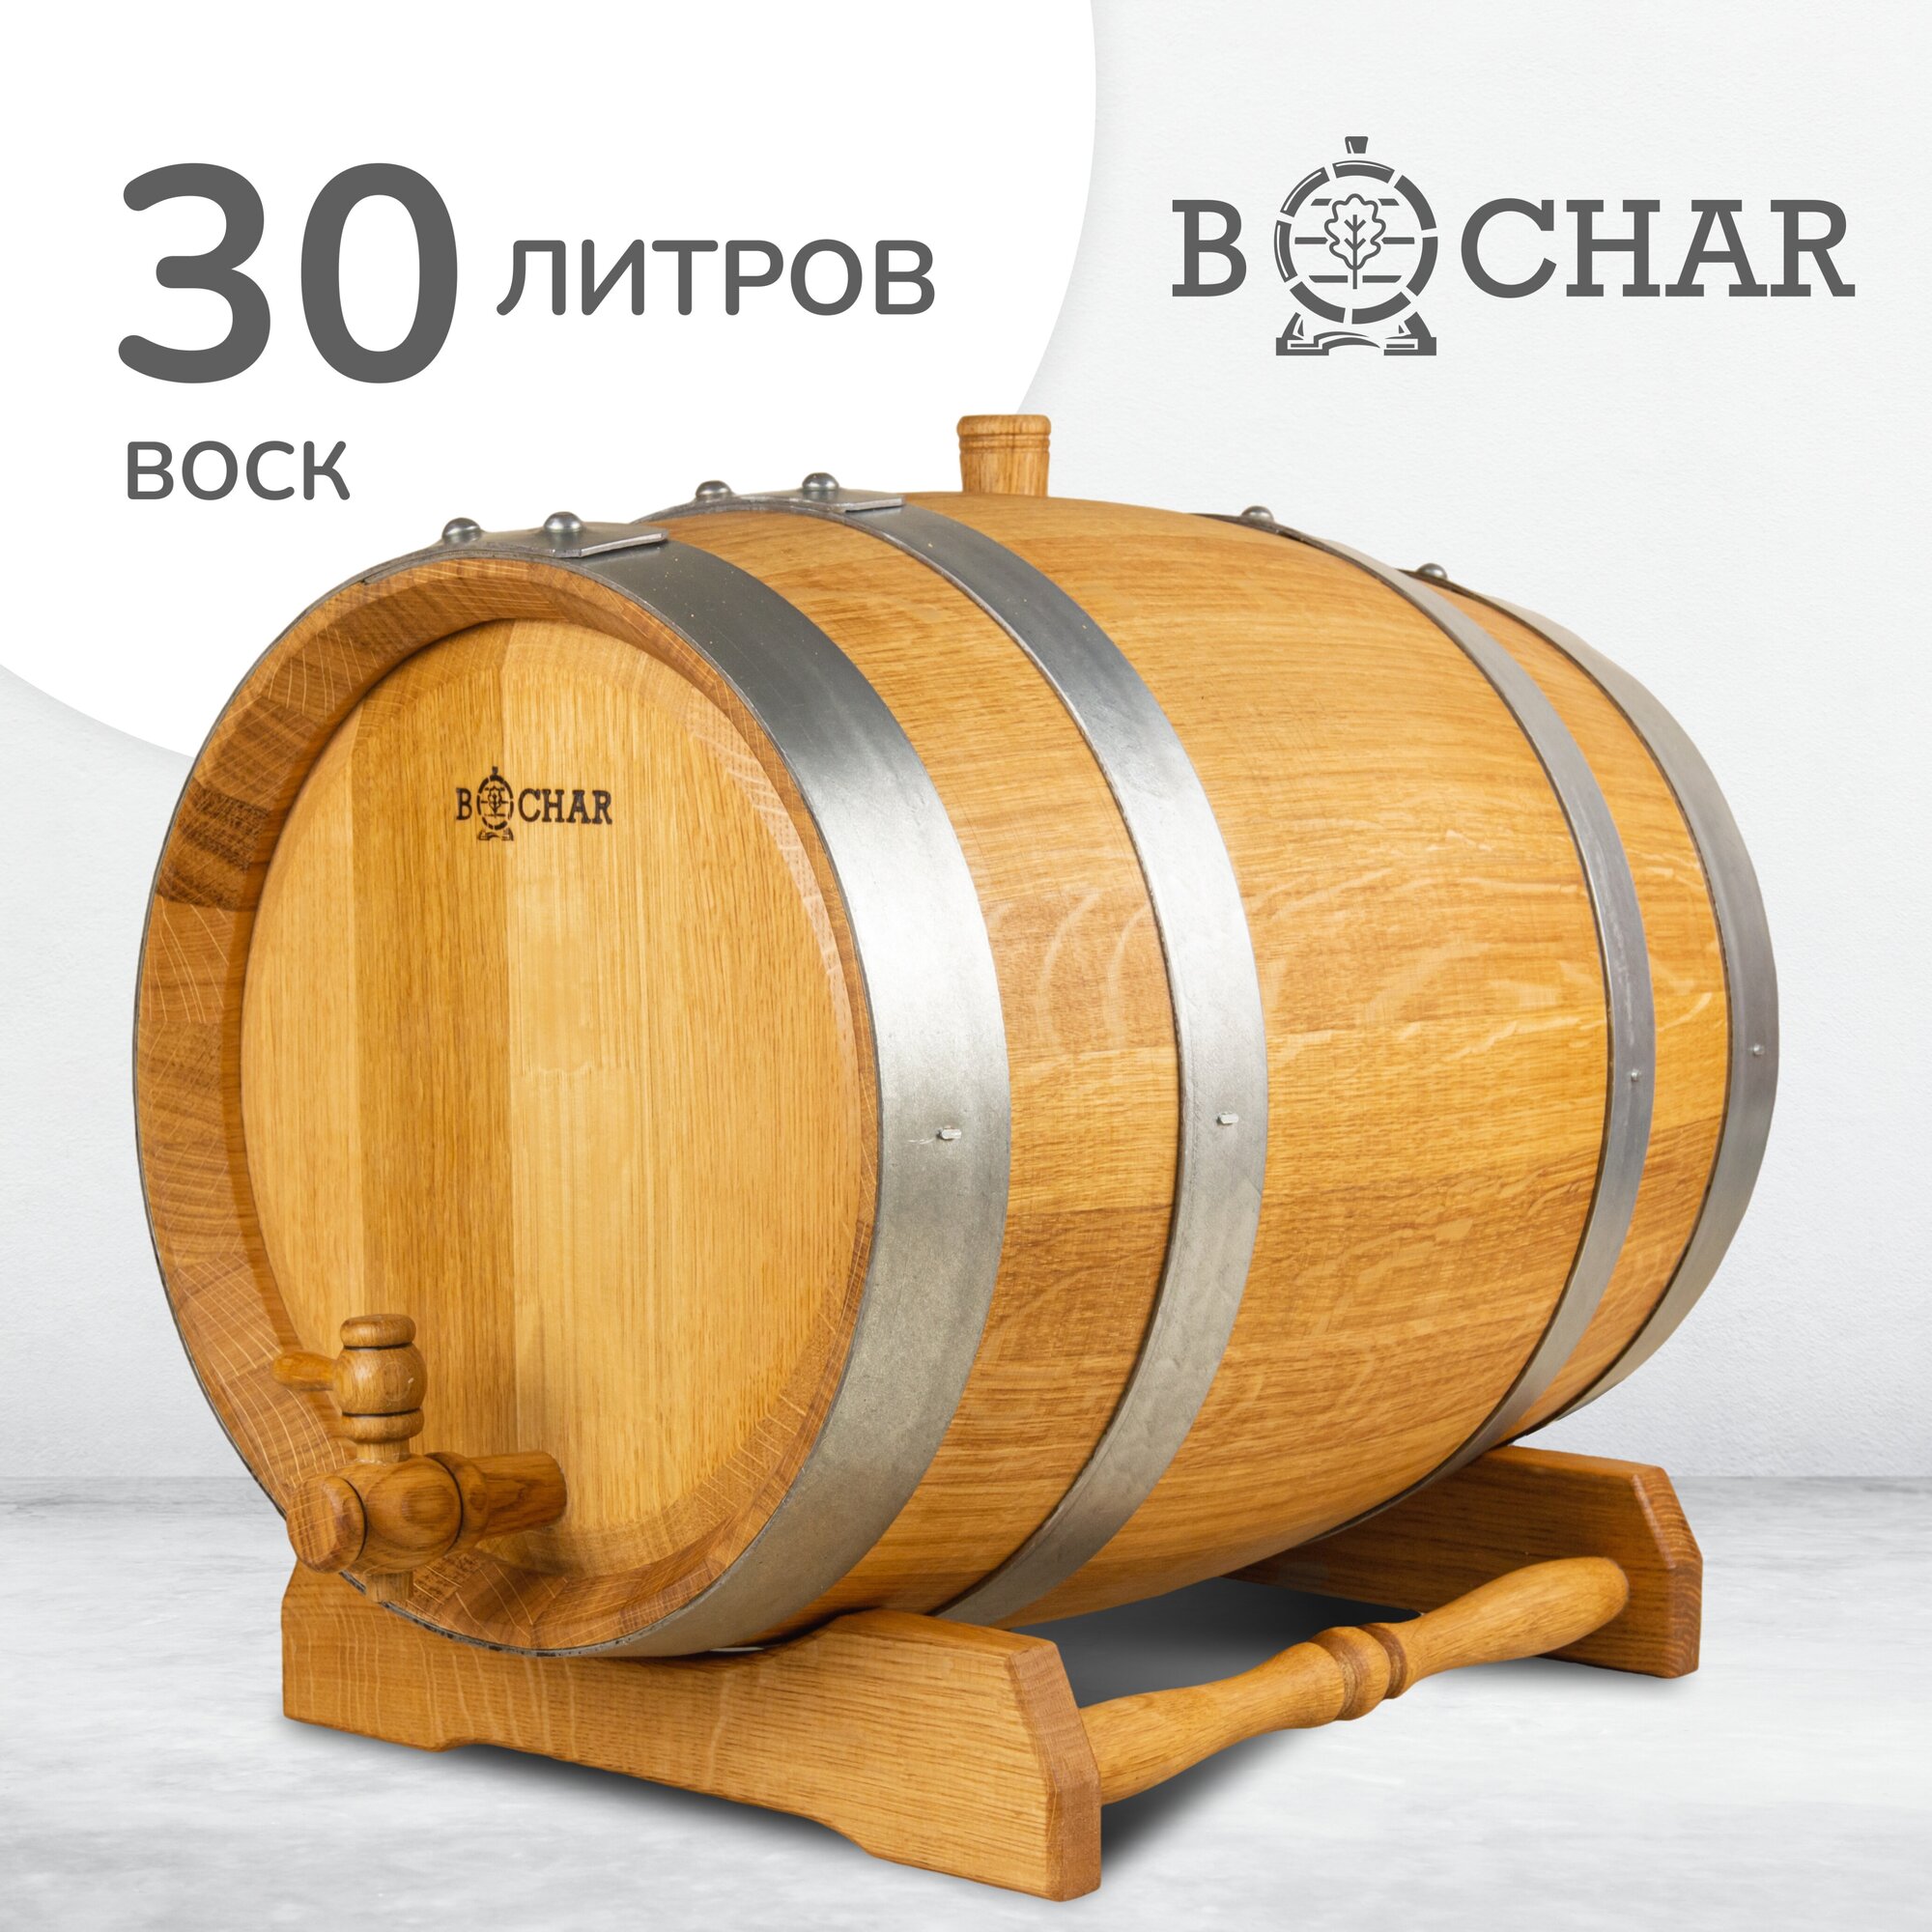 Бочка дубовая 30 литров вощёная "Бочар" с краником и подставкой, ГОСТ 8777-80 - фотография № 1